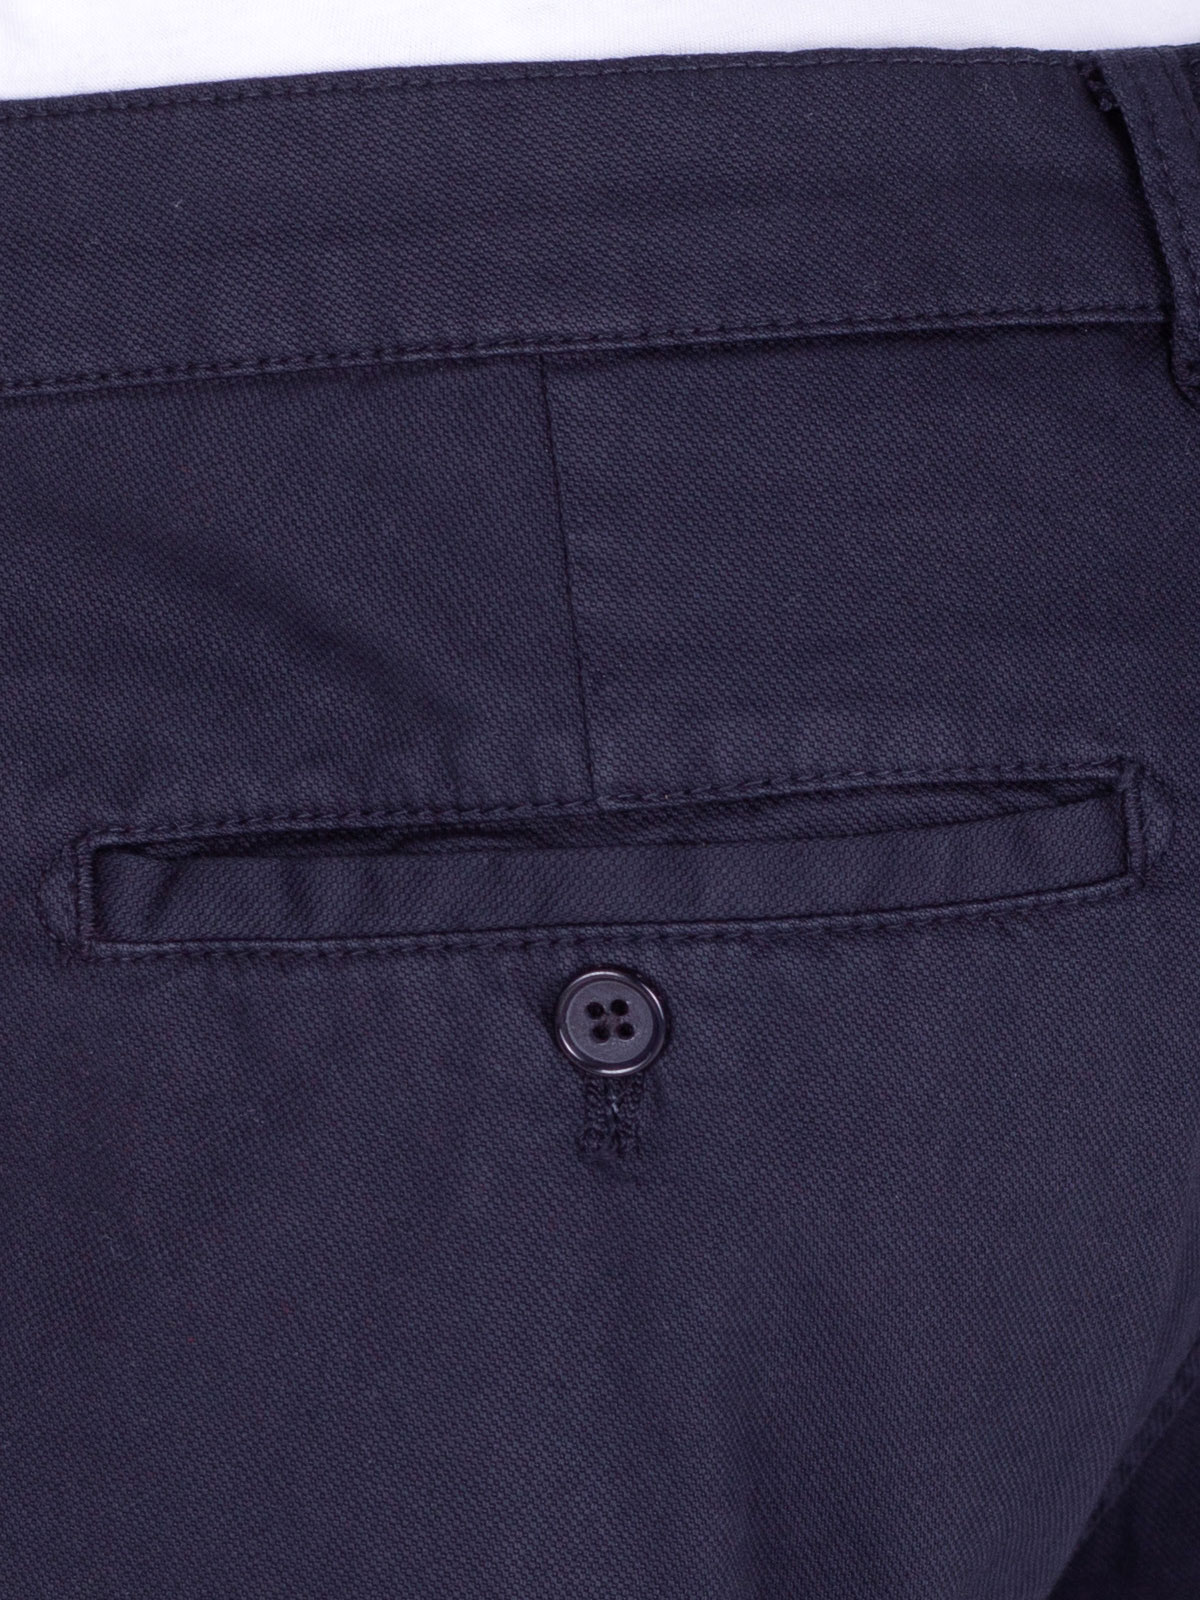 Δομημένο παντελόνι σε σκούρο μπλε - 60280 € 61.30 img4